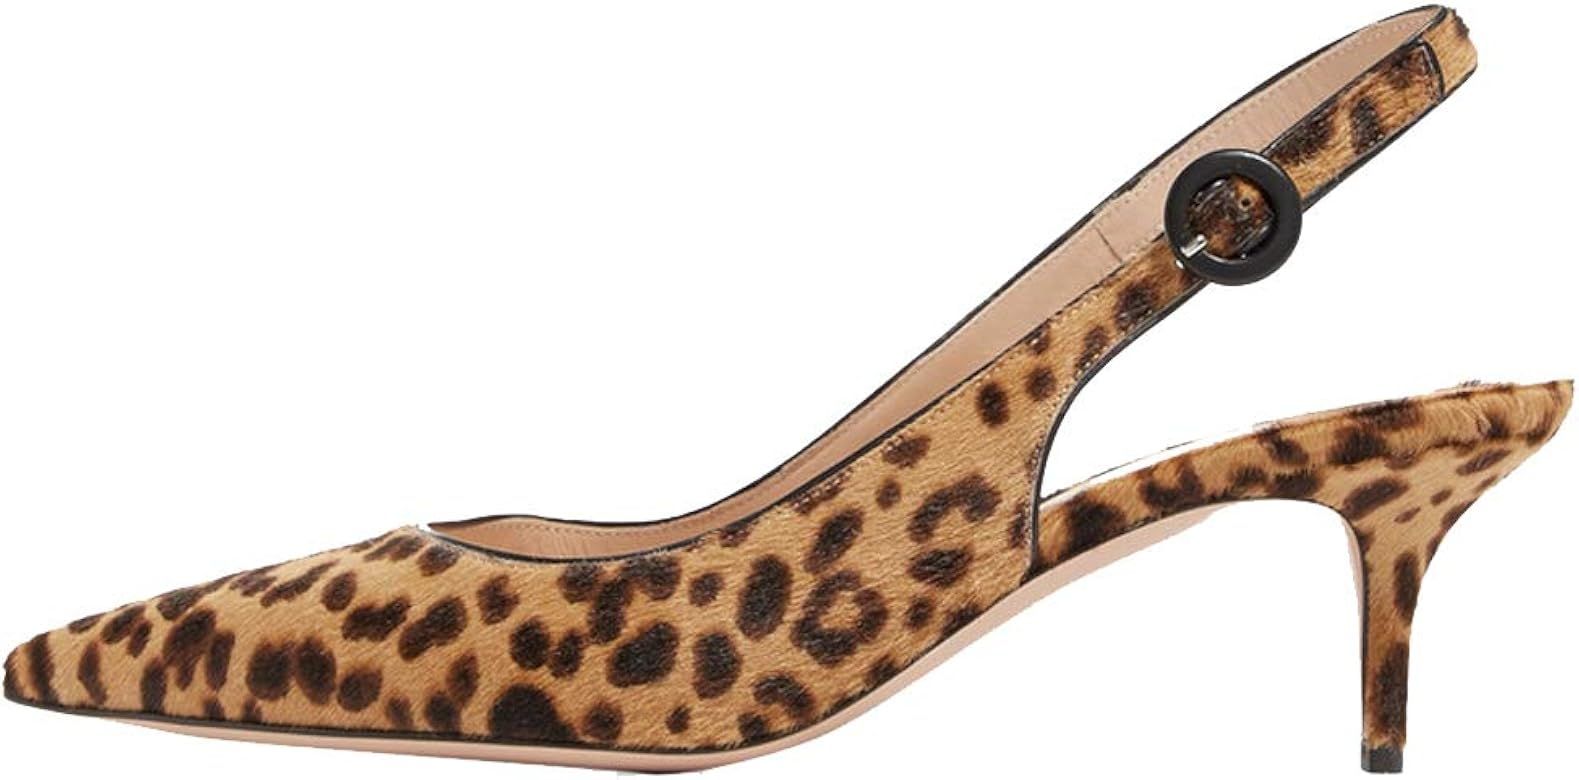 Divanne Slingback Pumps, Women's Pointed Toe Low Heel Sandals Slingback Strap Kitten Heel Pumps E... | Amazon (US)